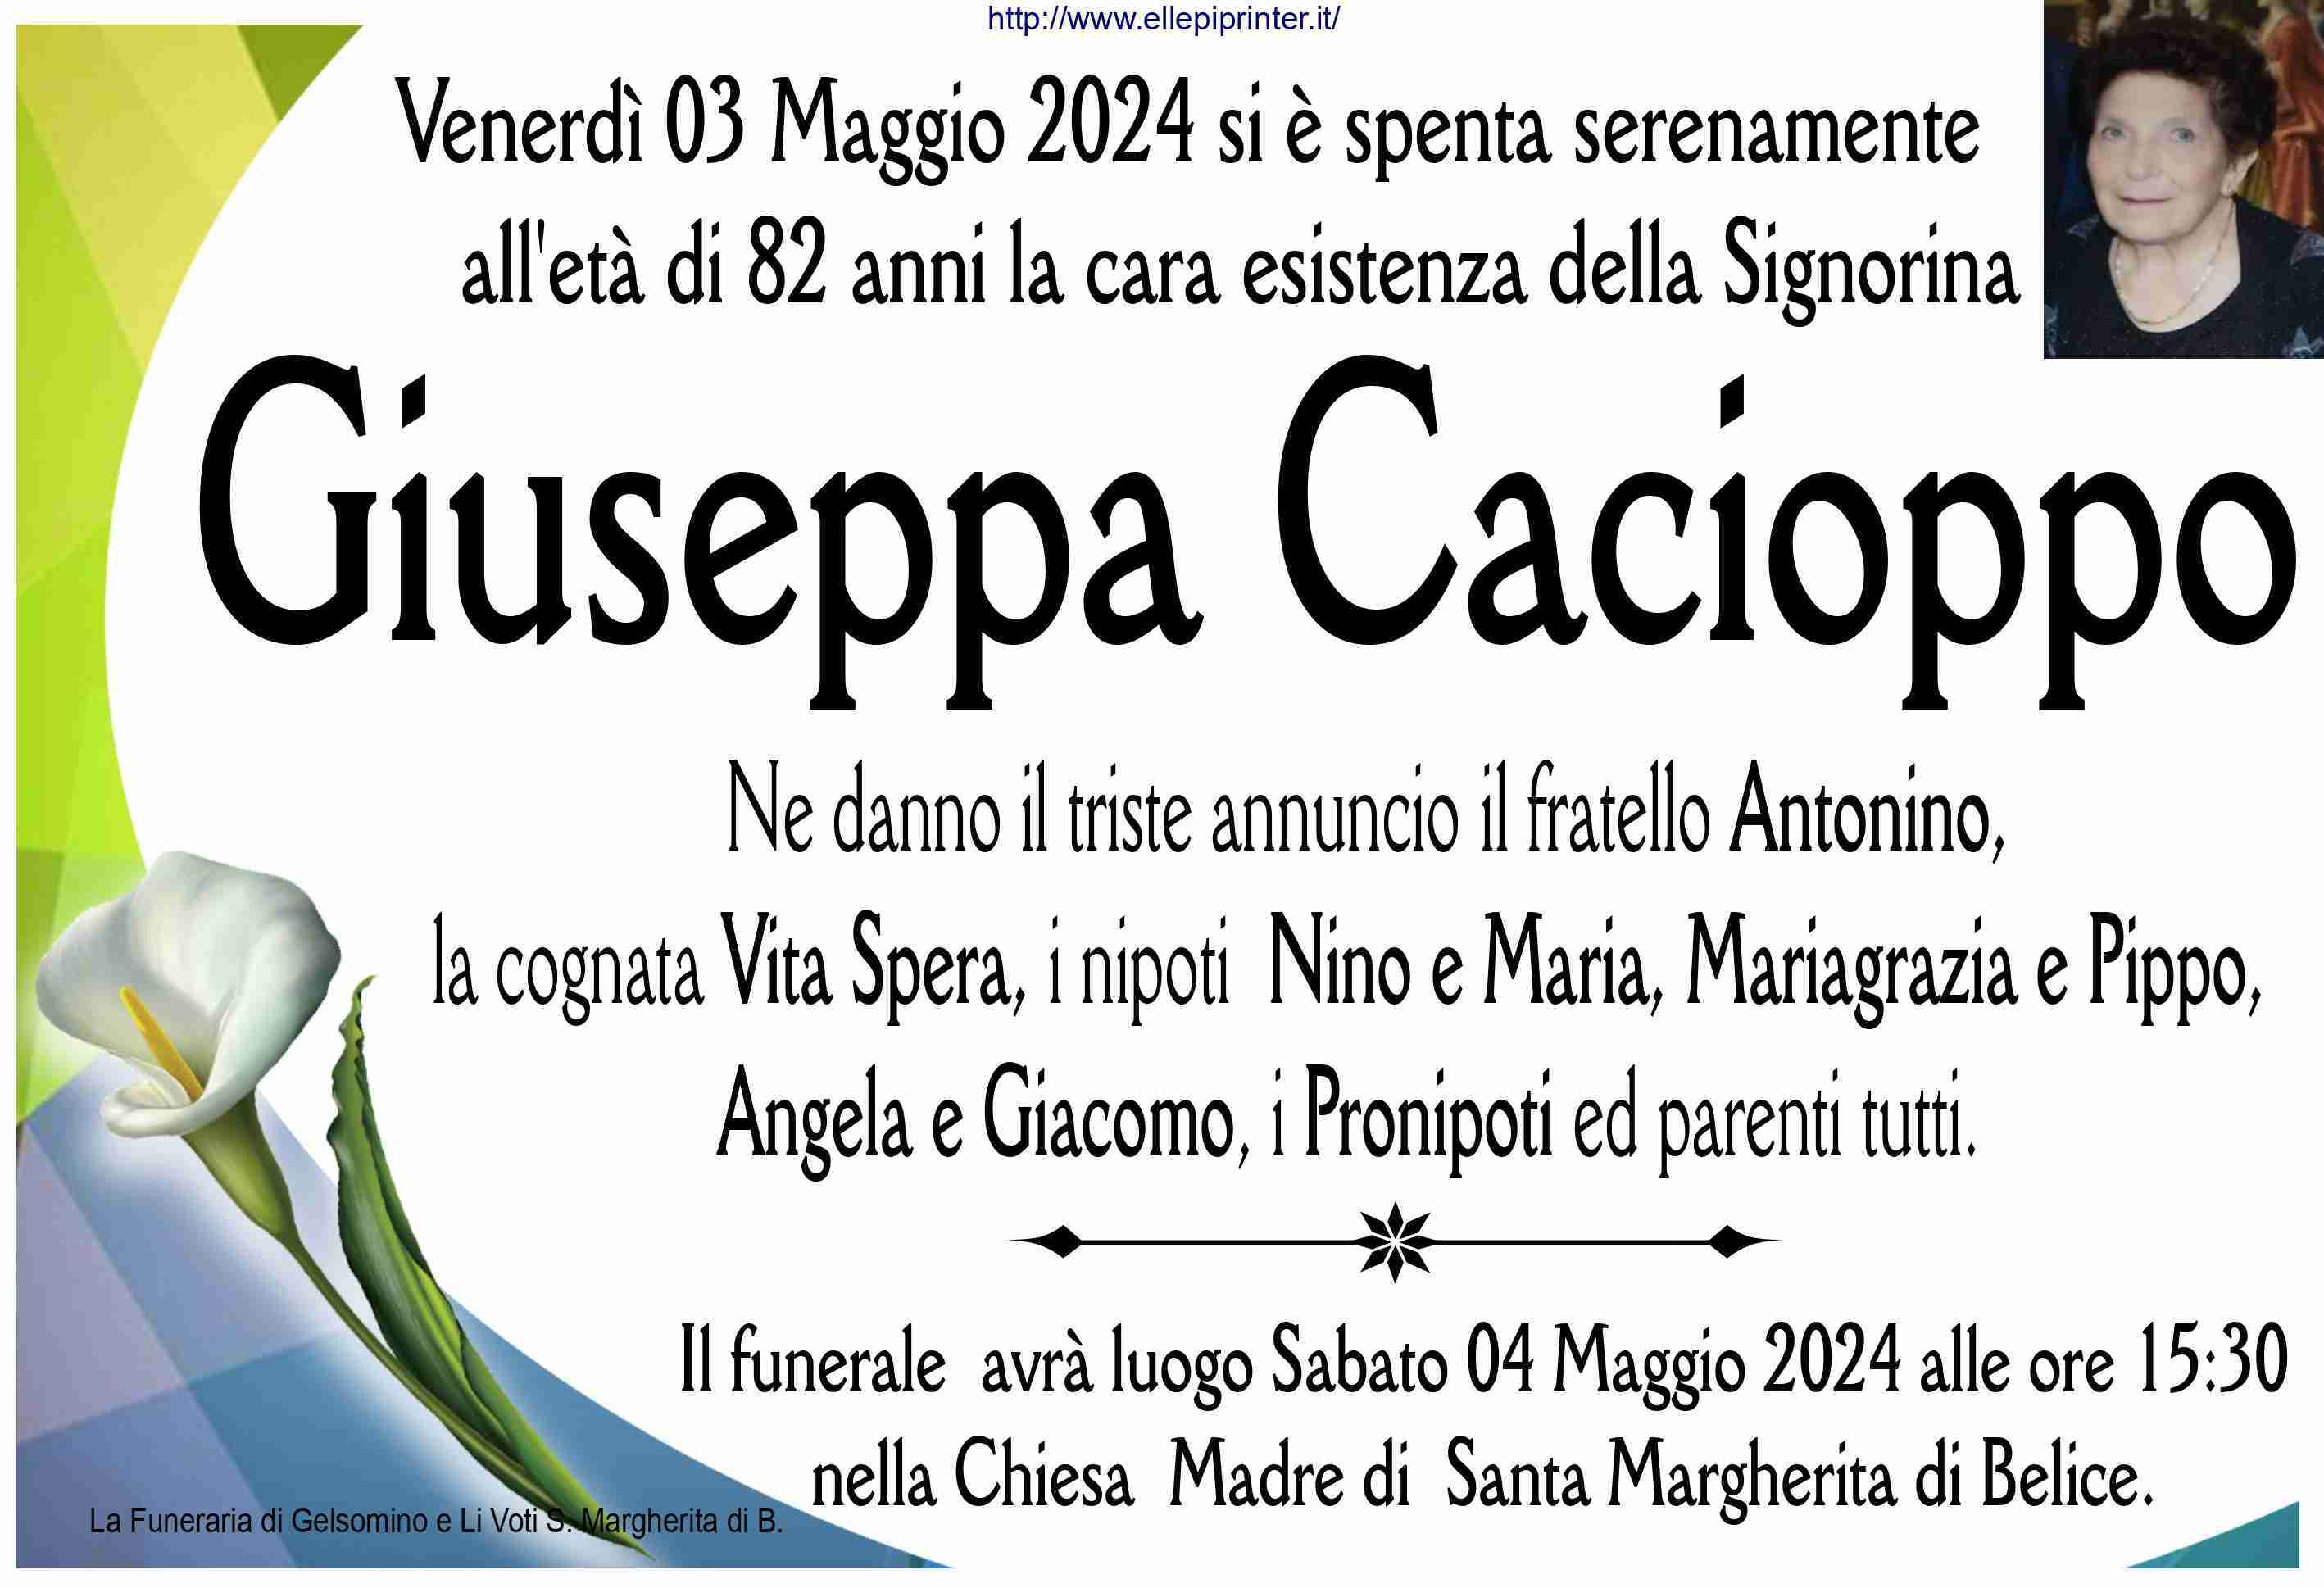 Giuseppa Cacioppo